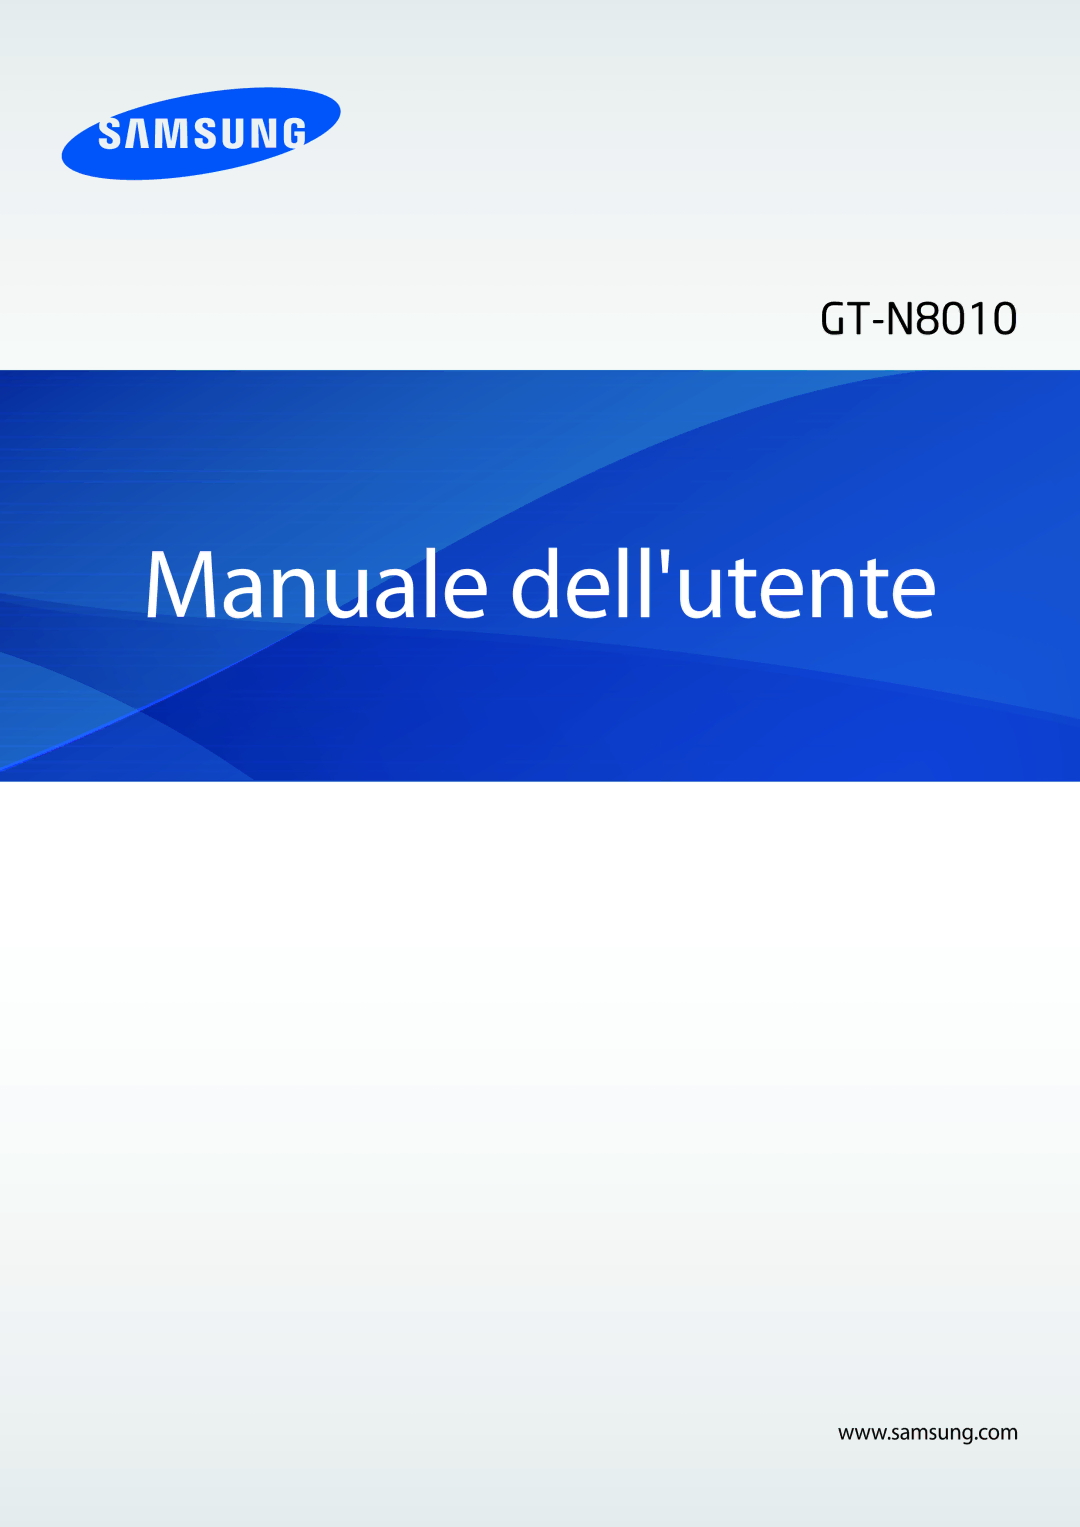 Samsung GT-N8010EAXITV, GT-N8010ZWATUR, GT-N8010EAAITV, GT-N8010ZWAITV, GT-N8010ZWXITV manual Manuale dellutente 